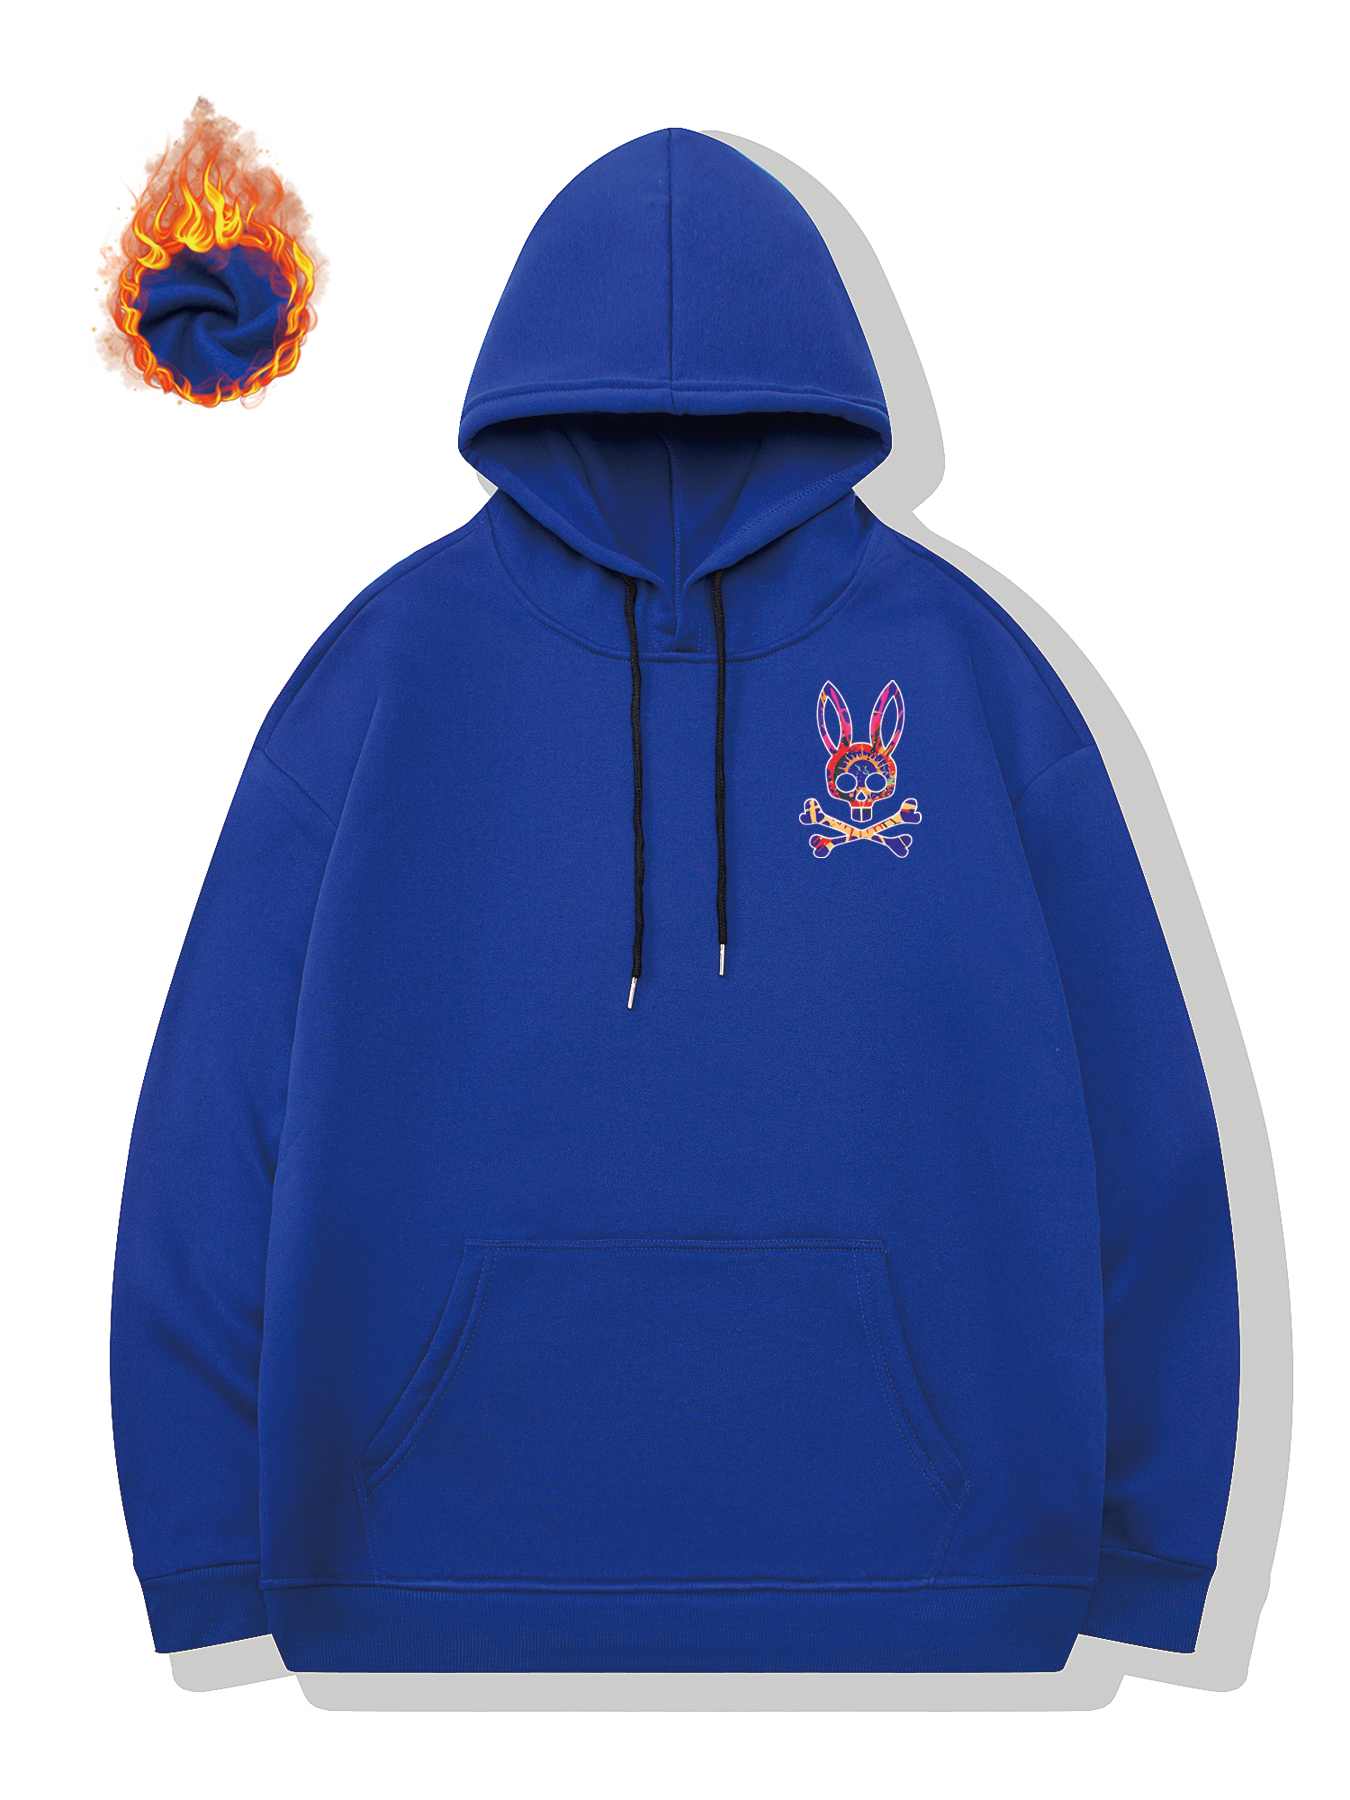 Louis Vuitton Bugs Bunny Hoodie  Bugs bunny hoodie, Hoodies, Cool hoodies